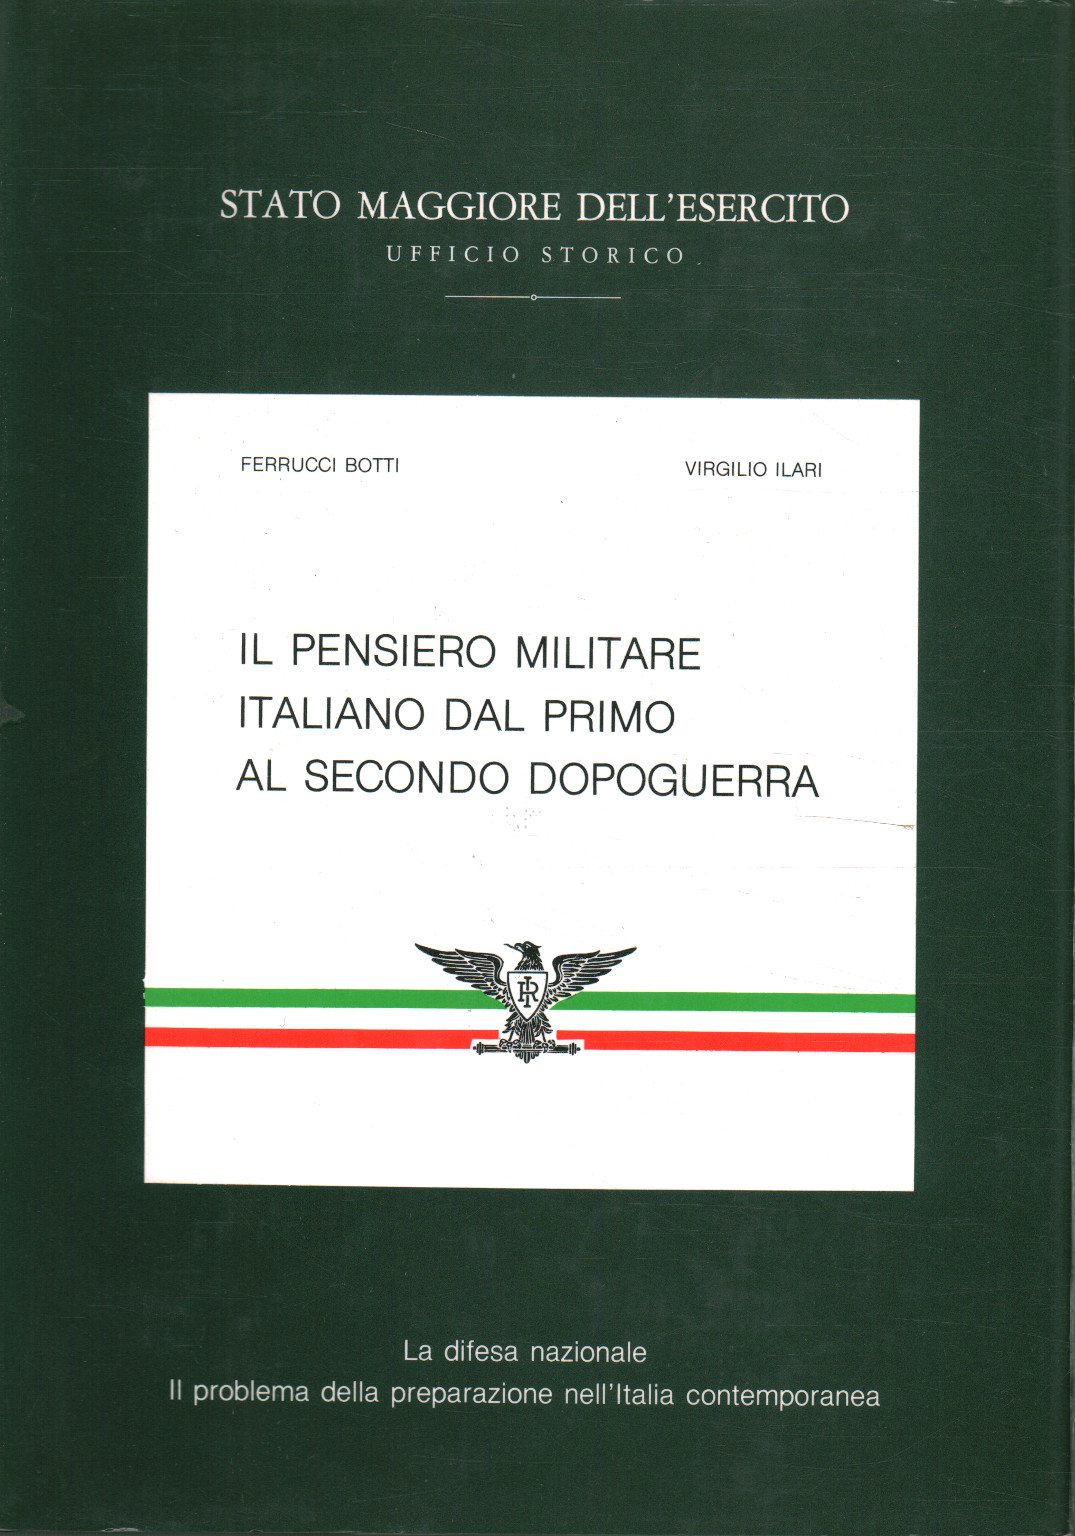 Il pensiero militare italiano dal primo%,Il pensiero militare italiano dal primo%,Il pensiero militare italiano dal primo%